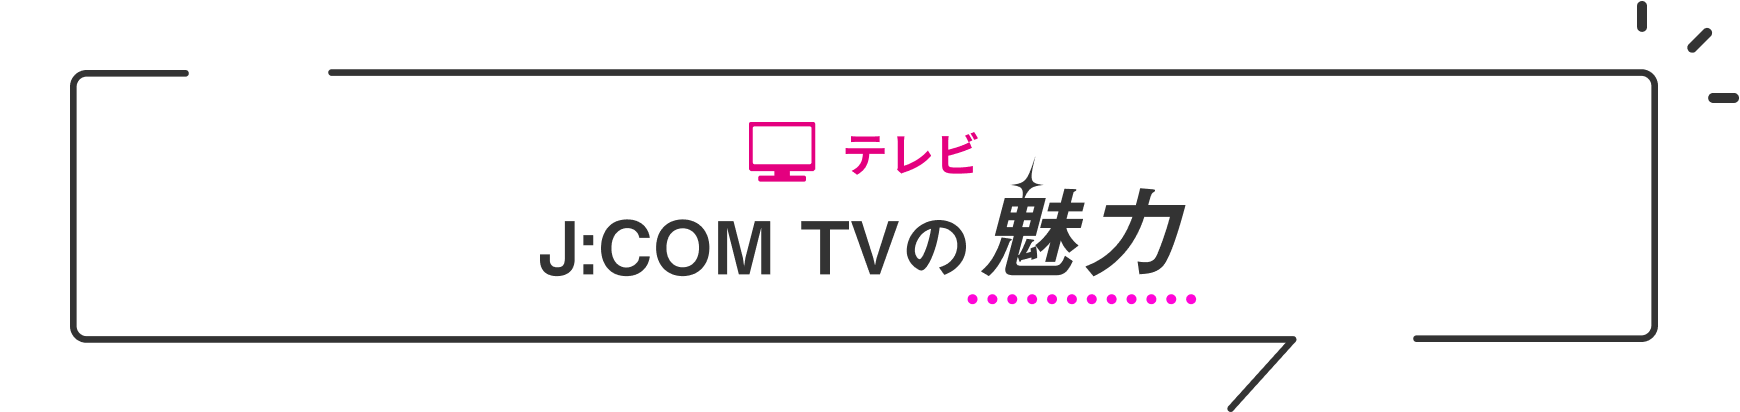 O charme da TV J:COM TV